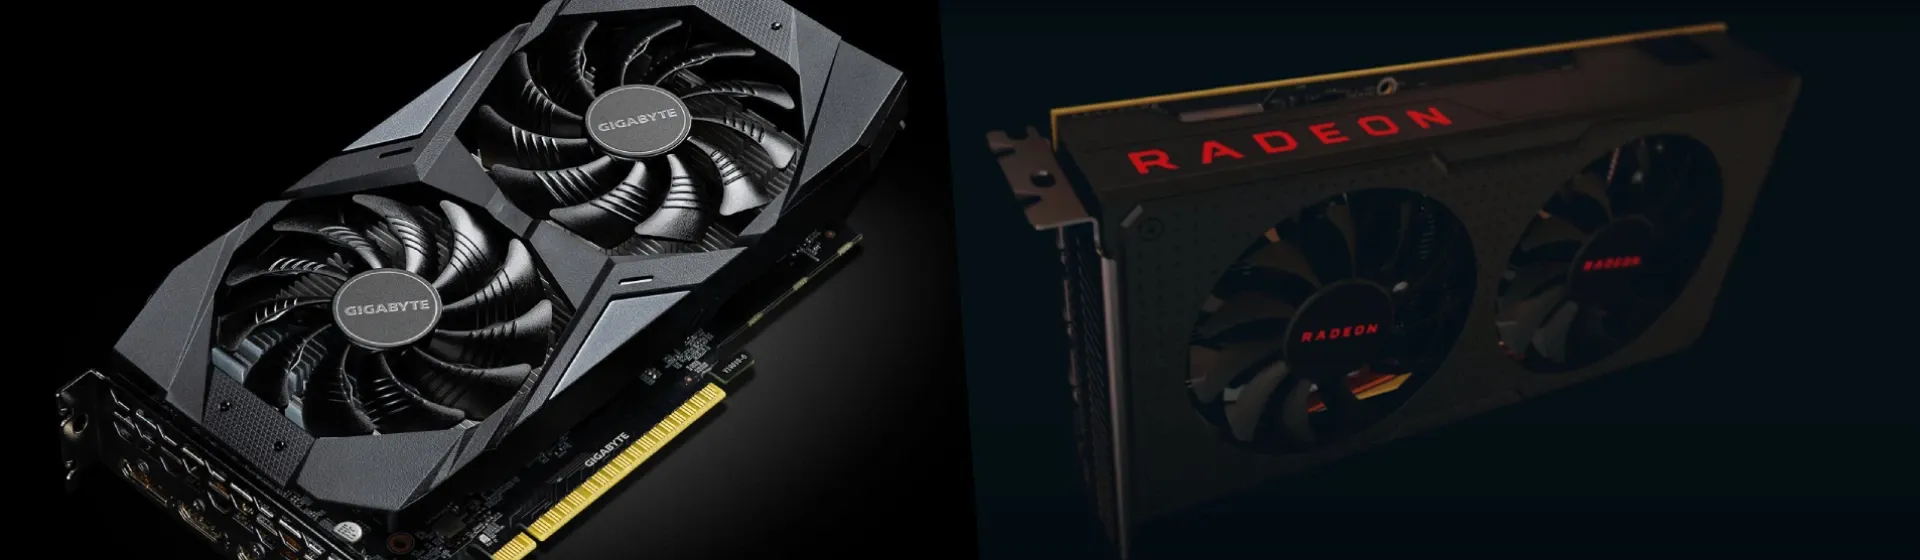 Counter Strike 2: Testes com placas de vídeo AMD Radeon e NVIDIA GeForce